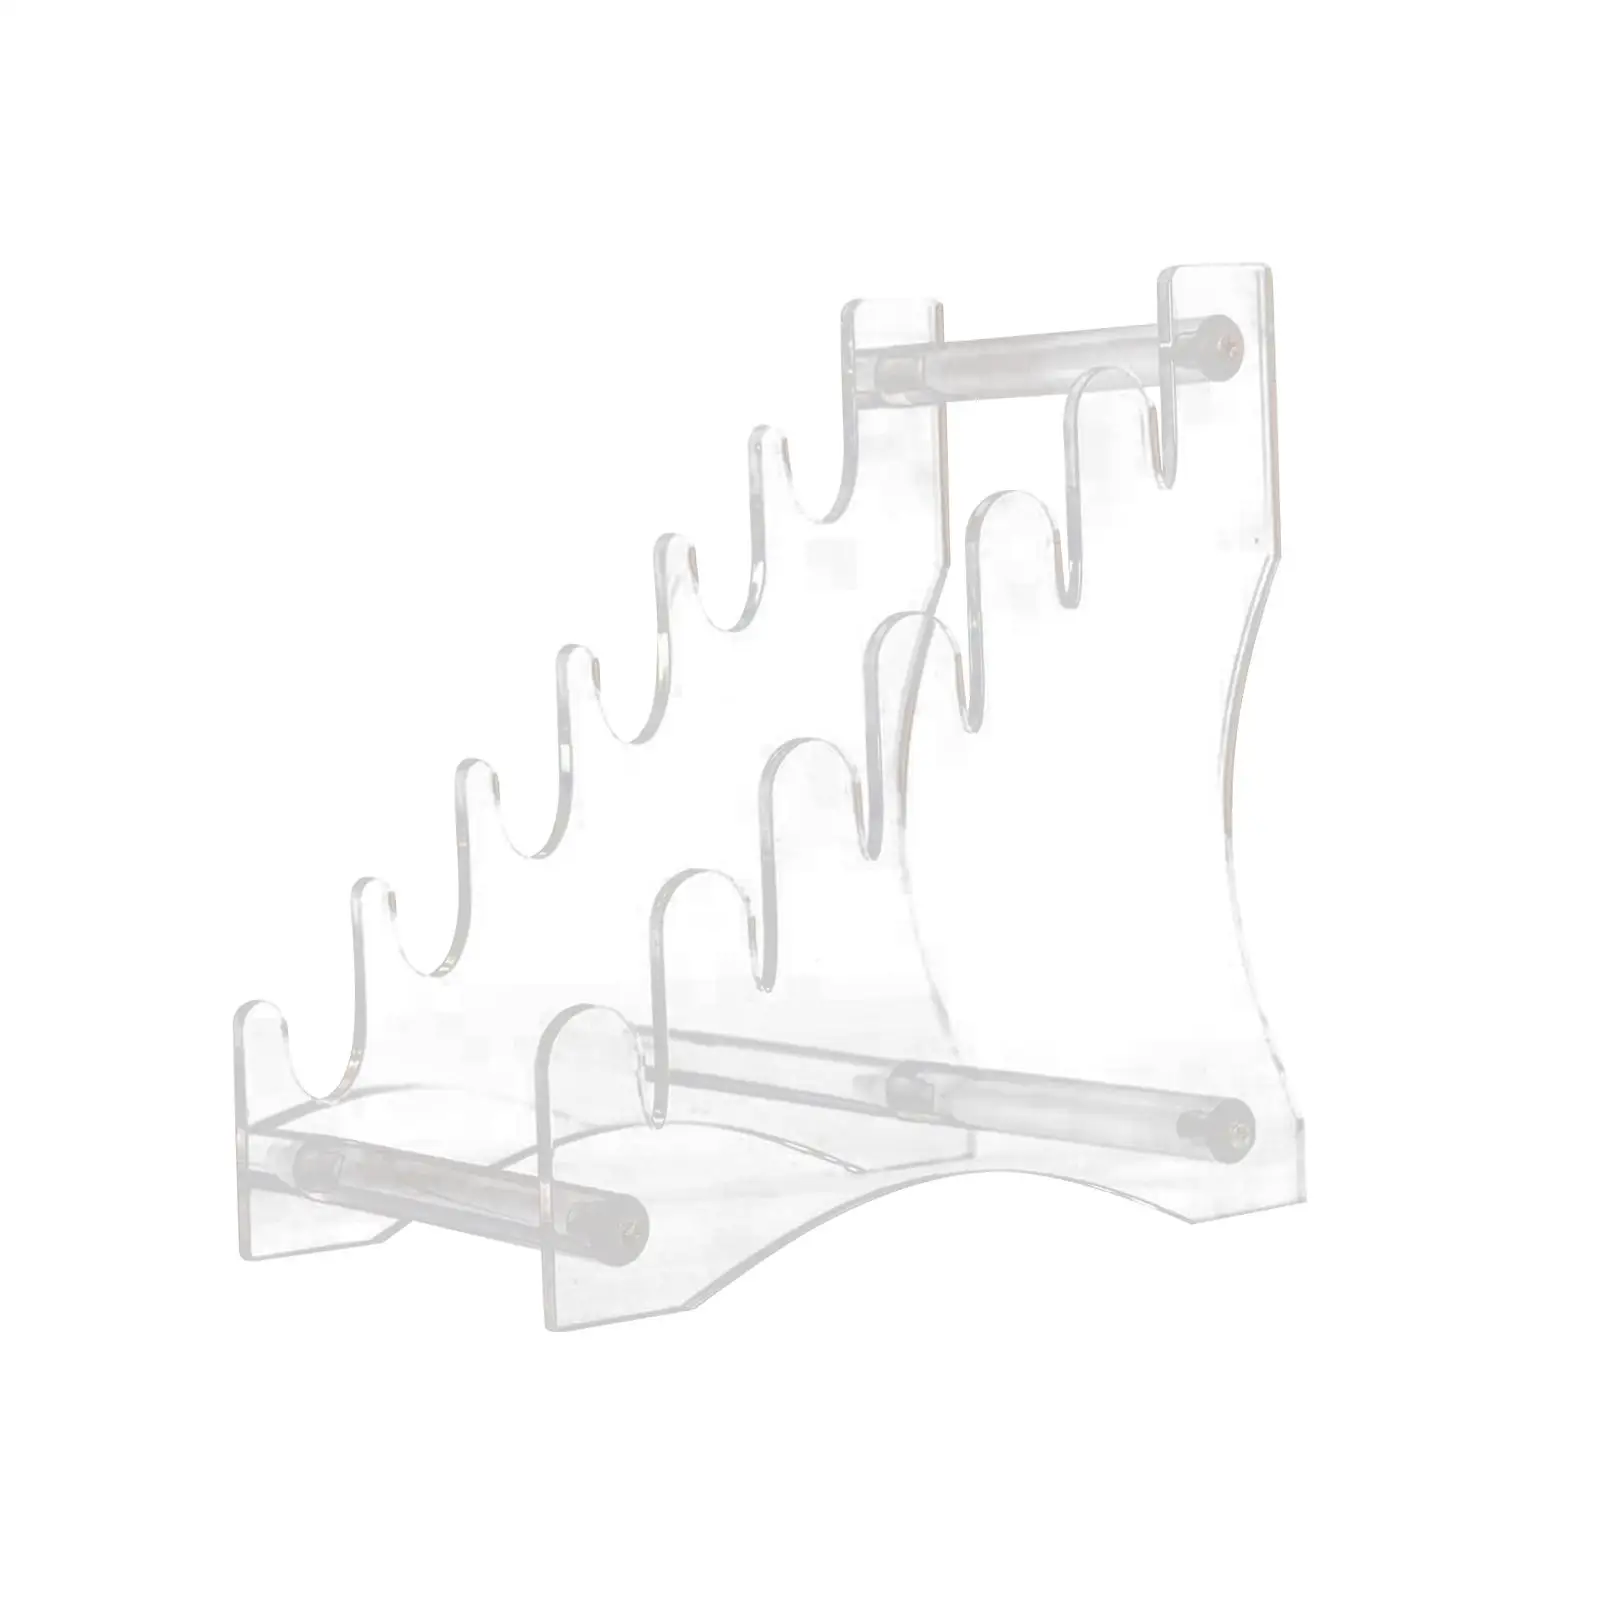 Clear Display Holder Bracket Store Collection Easel Stands Transparent Rack Lightsaber Stand for Desktop Home Cabinet Decoration